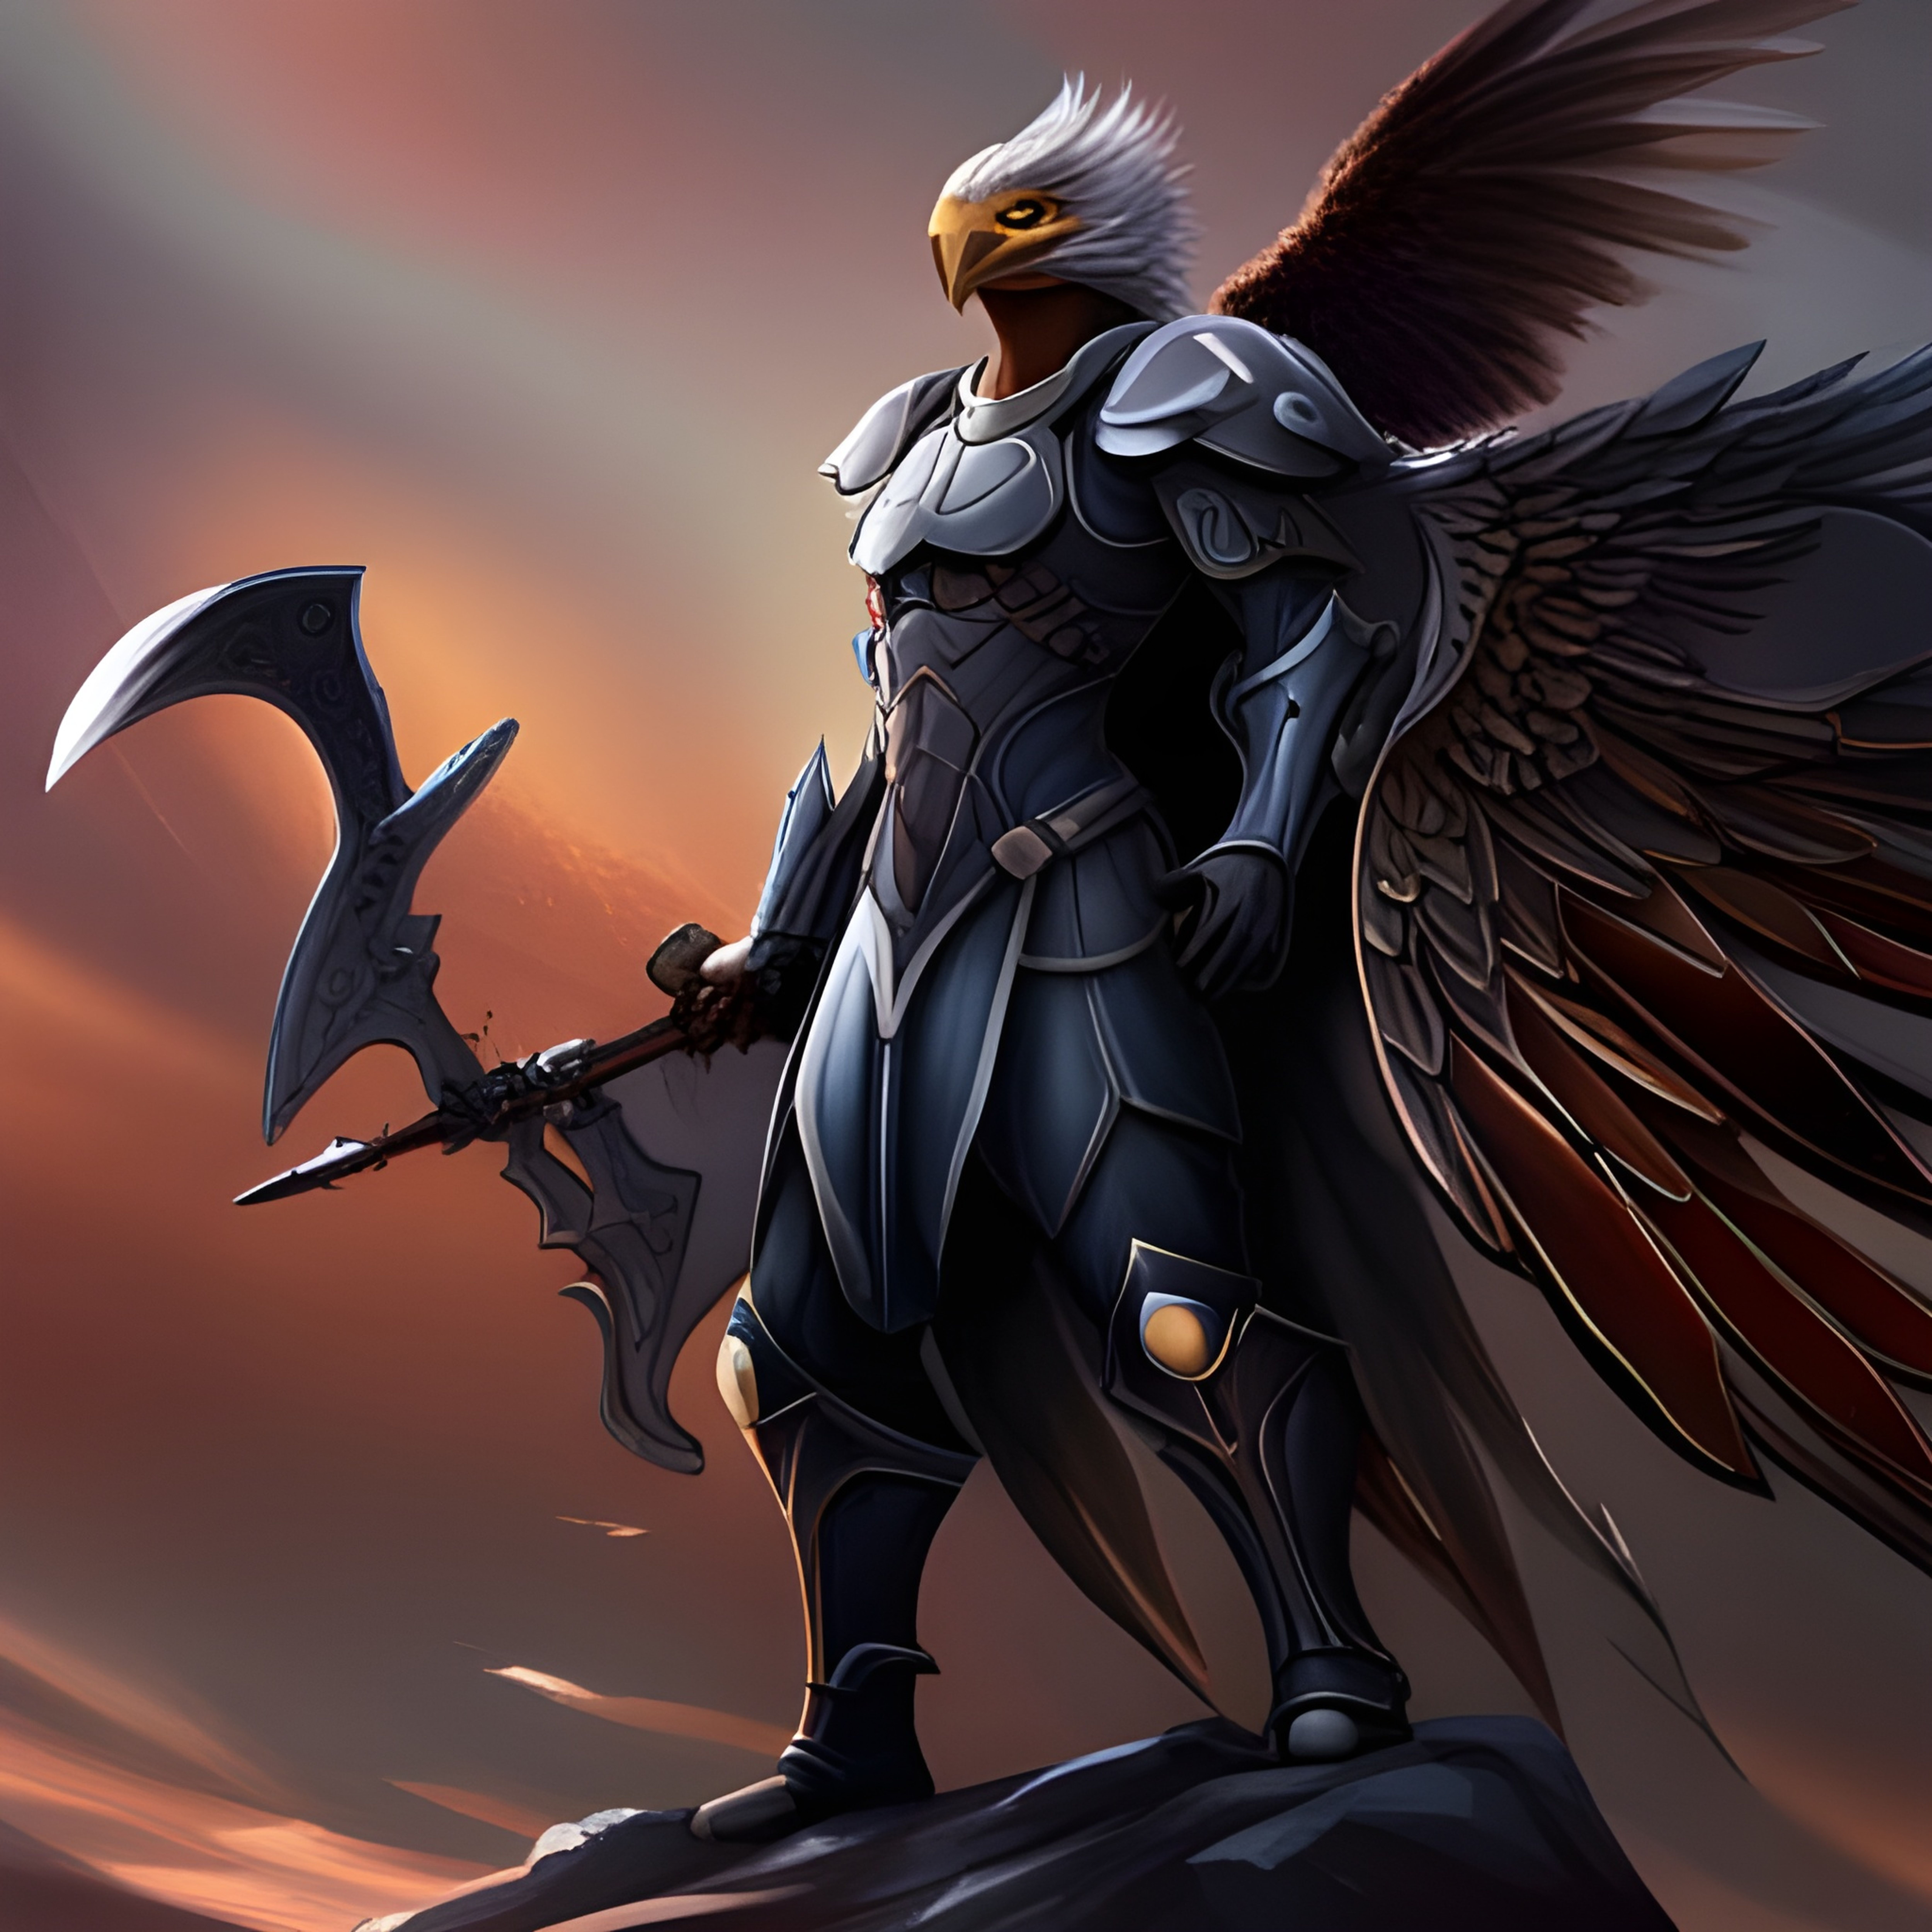 black winged archangel warrior